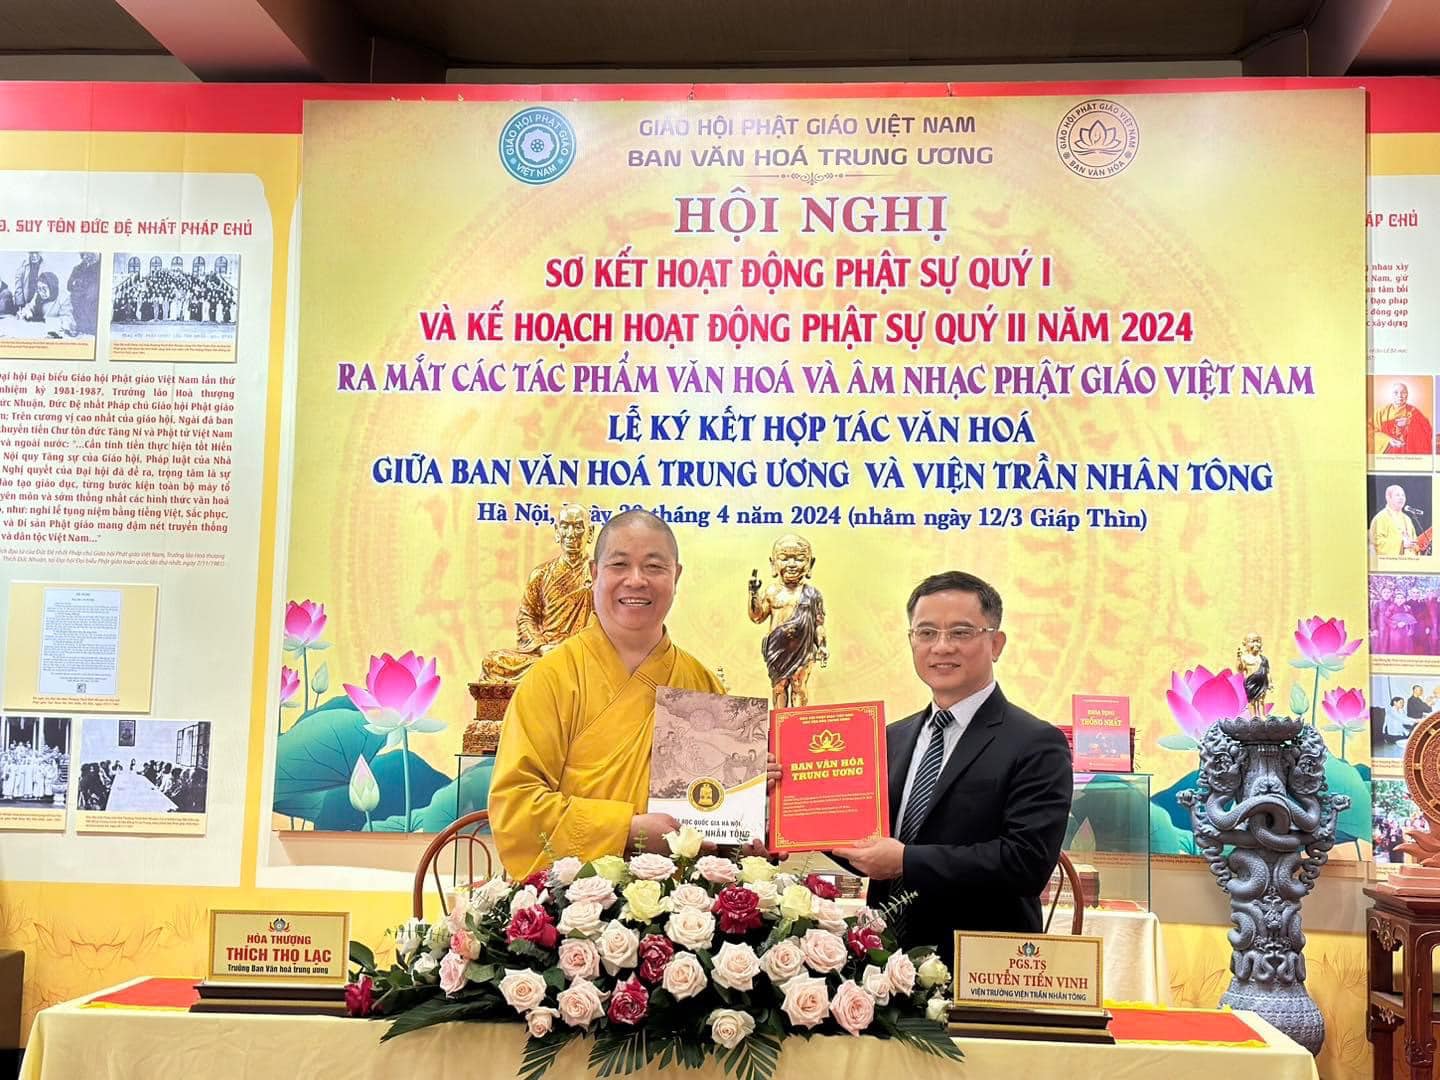 Lễ ký kết hợp tác văn hóa giữa Ban Văn hóa trung ương và Viện Trần Nhân Tông, Đại học Quốc gia Hà Nội